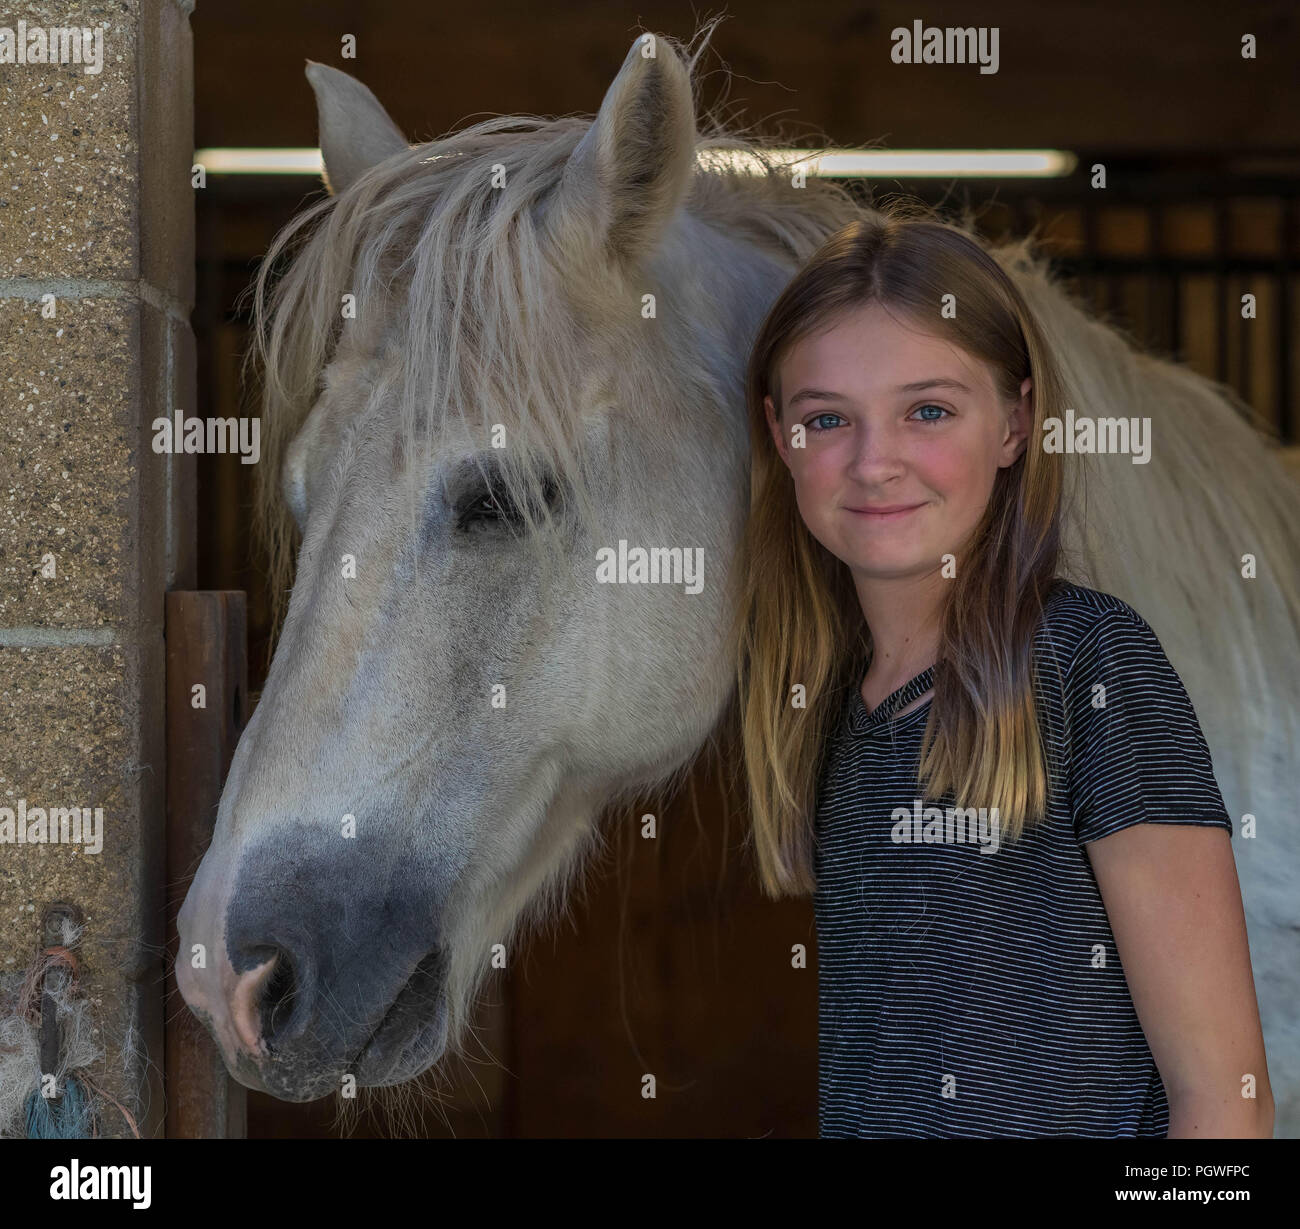 Le lien entre la jeune fille et le cheval Banque D'Images